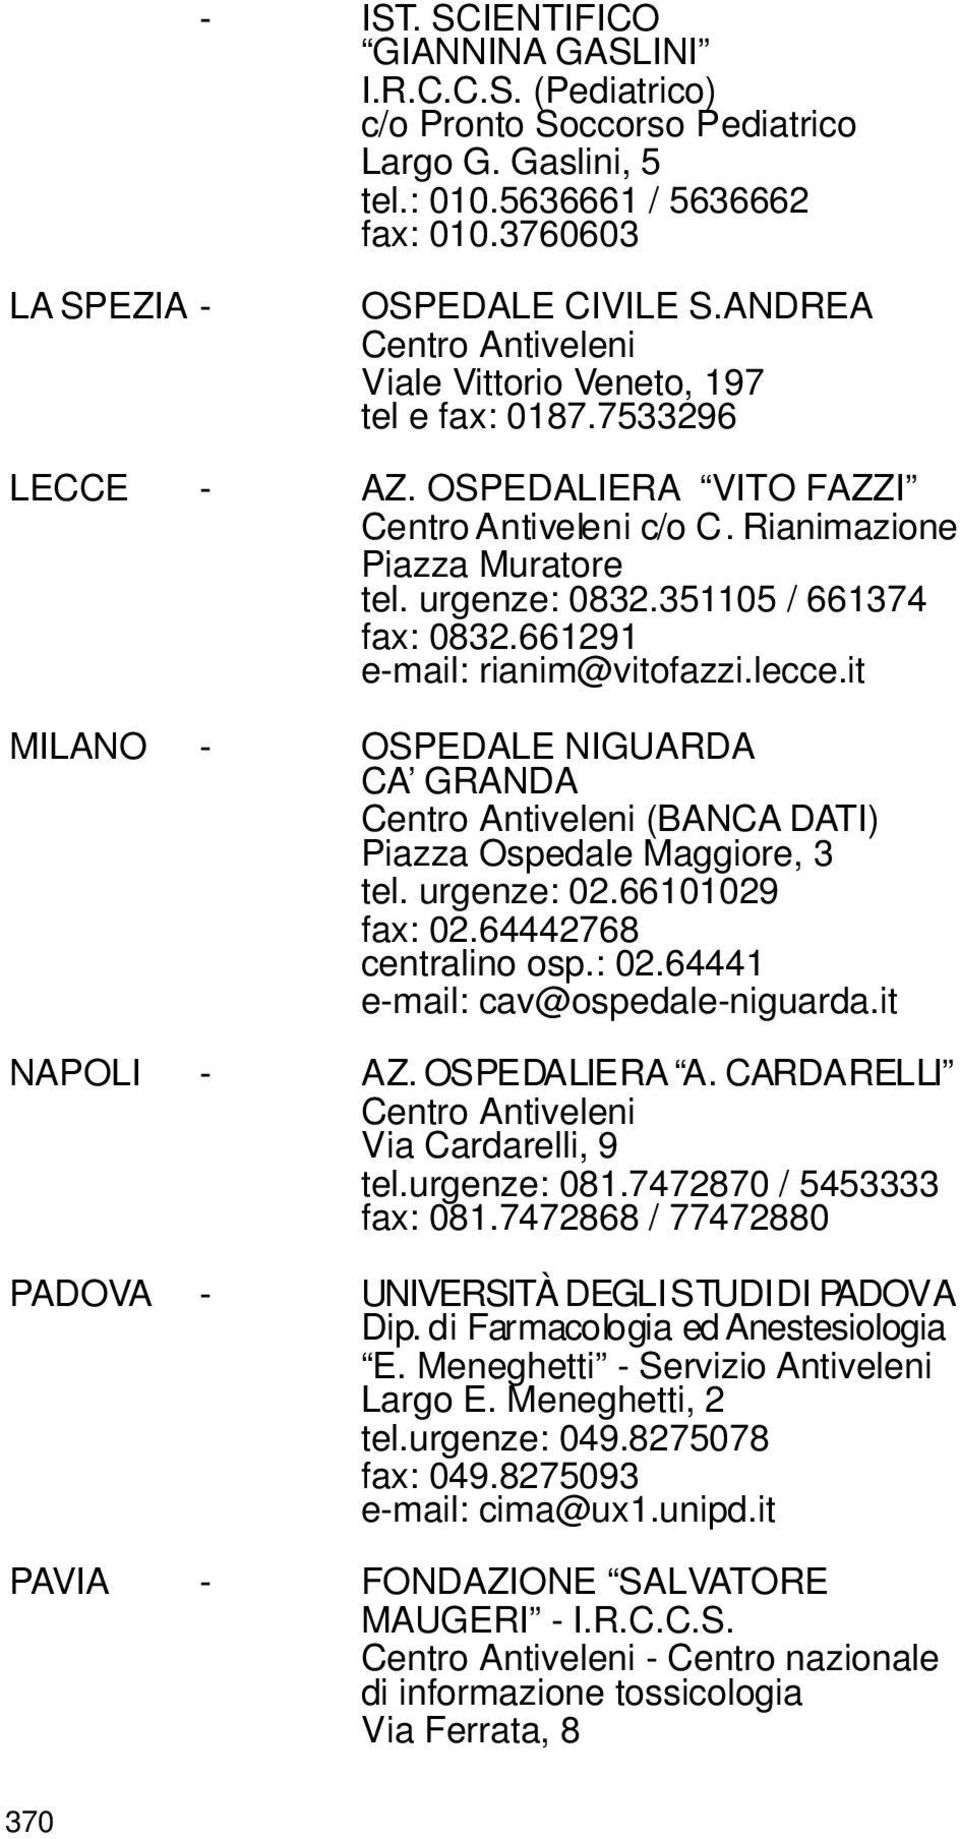 351105 / 661374 fax: 0832.661291 e-mail: rianim@vitofazzi.lecce.it MILANO - OSPEDALE NIGUARDA CA GRANDA Centro Antiveleni (BANCA DATI) Piazza Ospedale Maggiore, 3 tel. urgenze: 02.66101029 fax: 02.